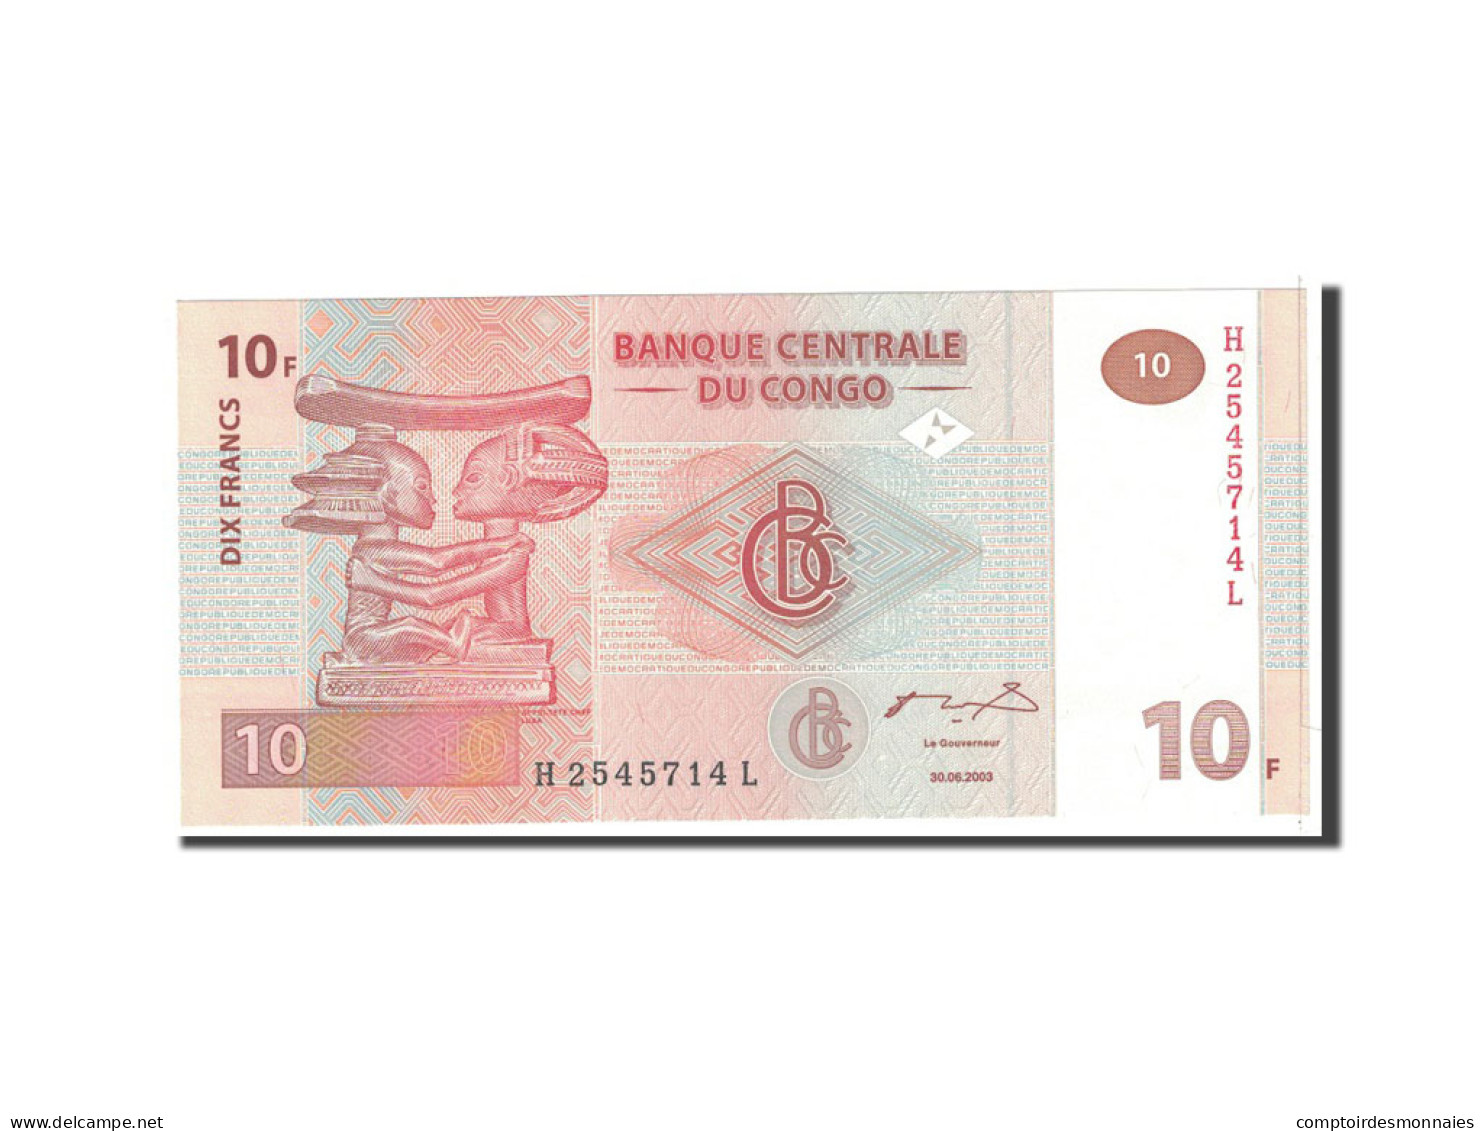 Billet, Congo Democratic Republic, 10 Francs, 2003, 2003-06-30, KM:93a, NEUF - República Del Congo (Congo Brazzaville)